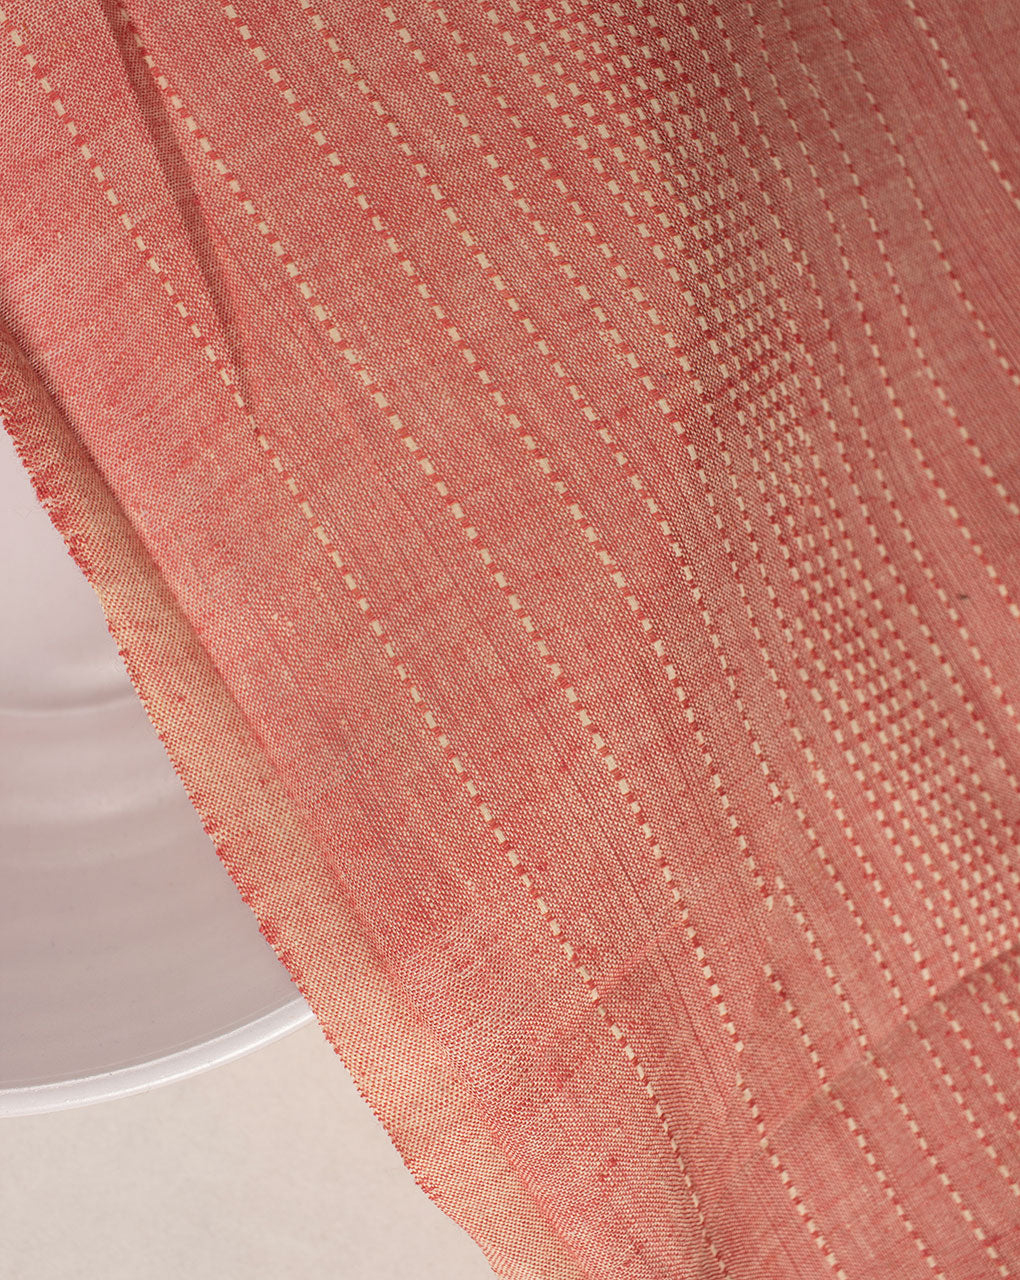 ( Pre Cut 1 MTR ) Kantha Loom Textured Cotton Fabric